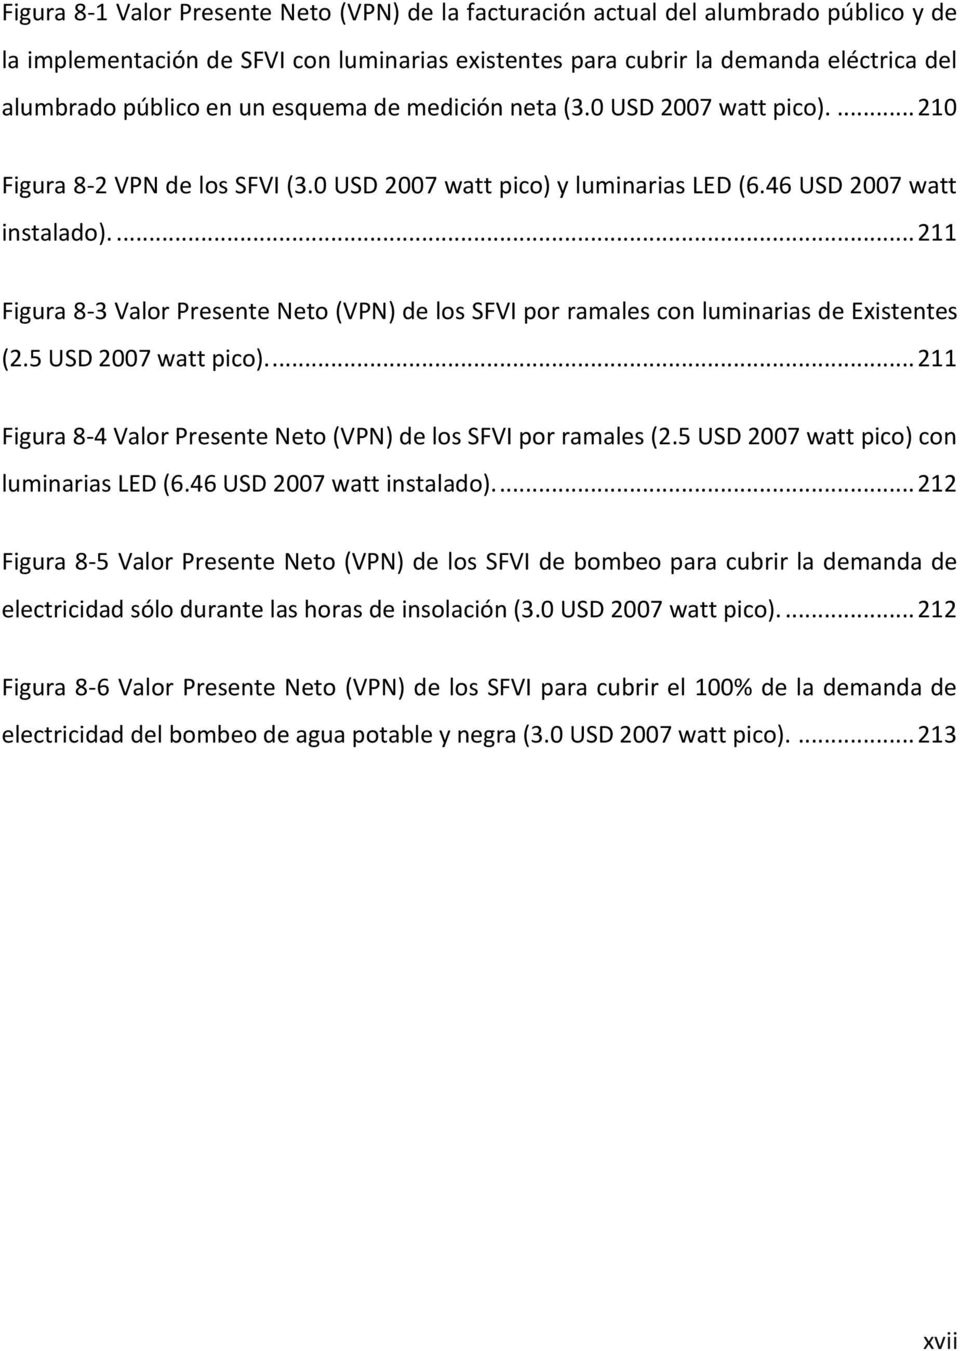 ... 211 Figura 8-3 Valor Presente Neto (VPN) de los SFVI por ramales con luminarias de Existentes (2.5 USD 2007 watt pico).... 211 Figura 8-4 Valor Presente Neto (VPN) de los SFVI por ramales (2.